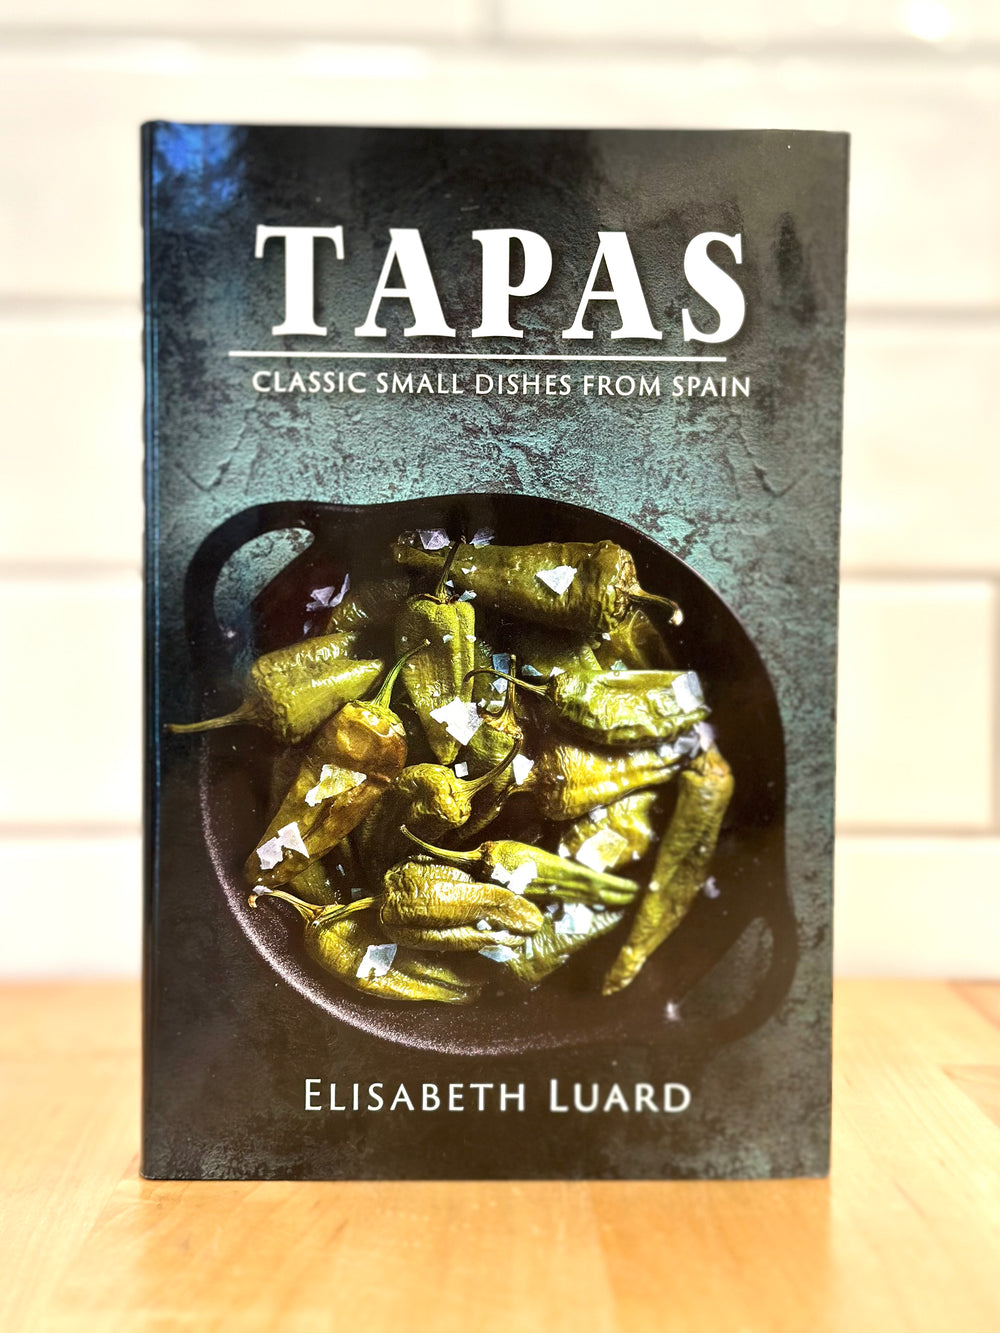 TAPAS by Elizabeth Luard